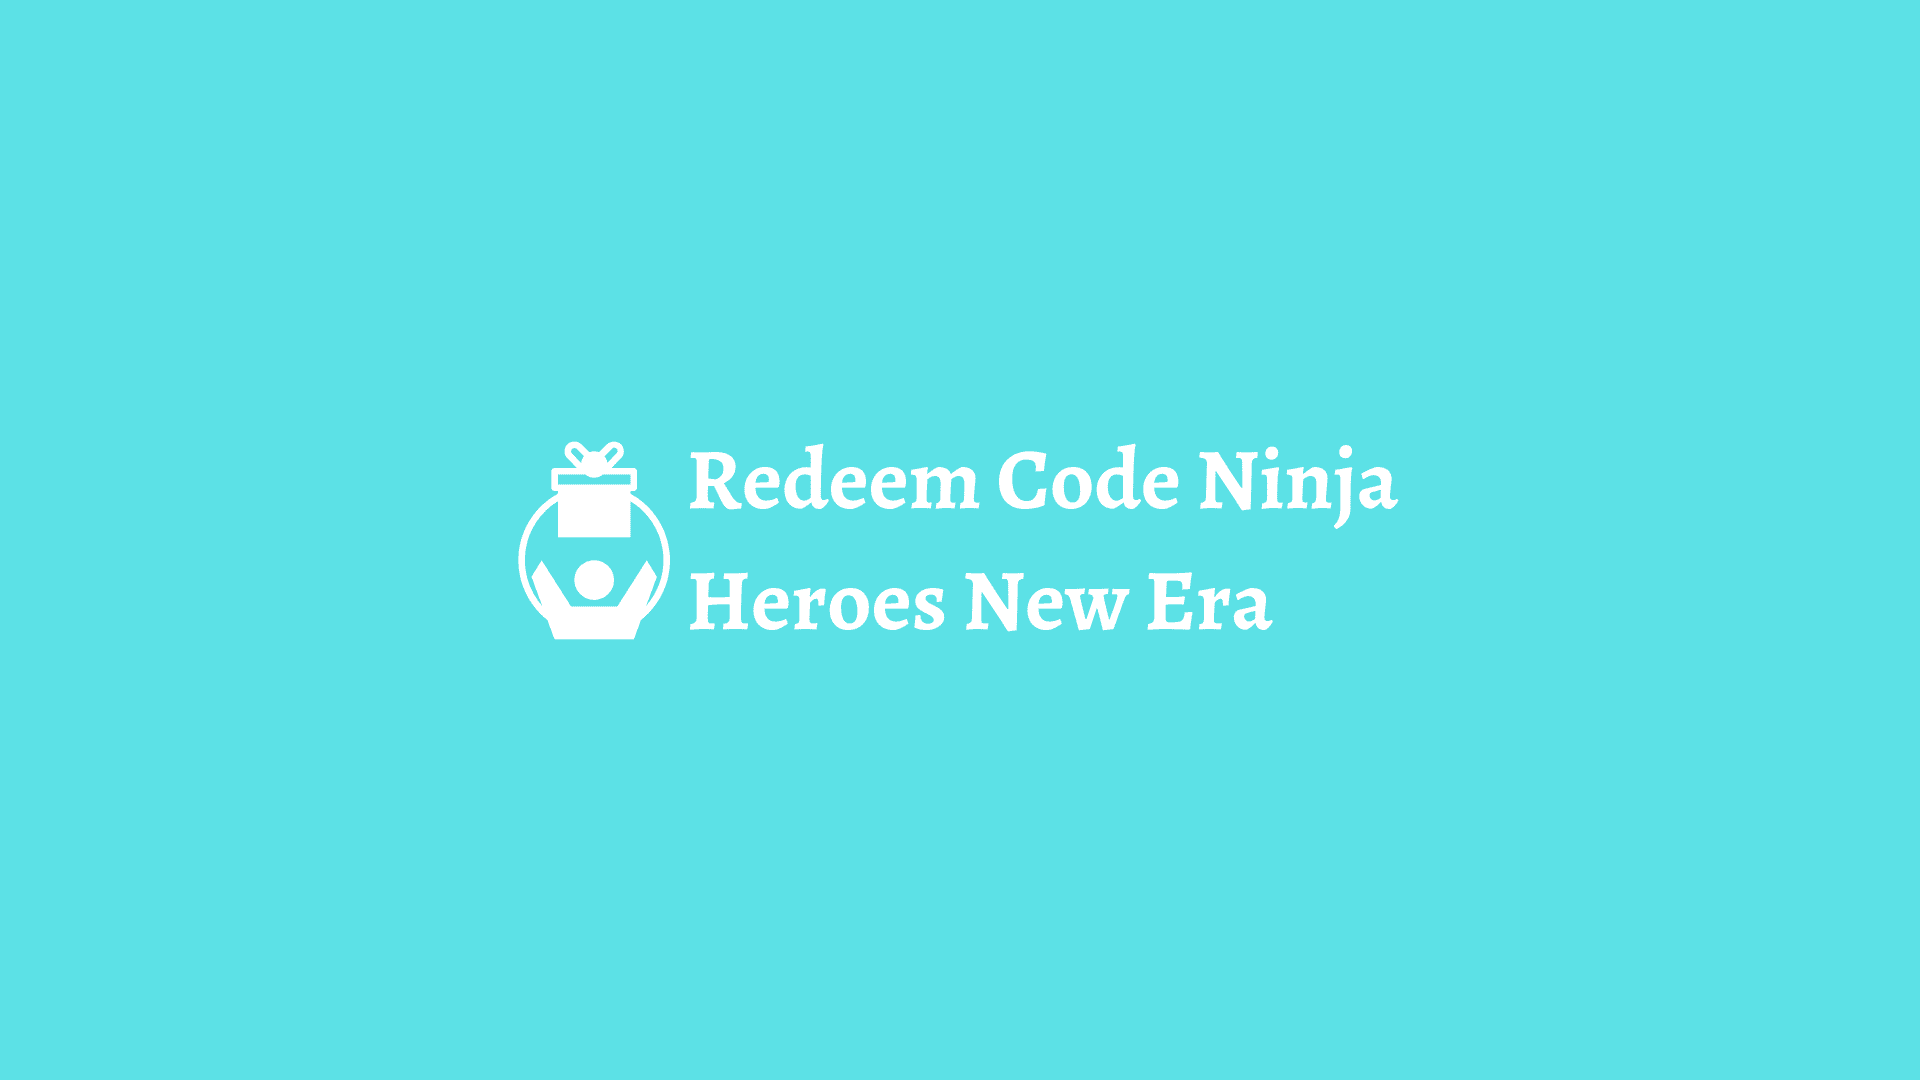 redeem code ninja heroes new era